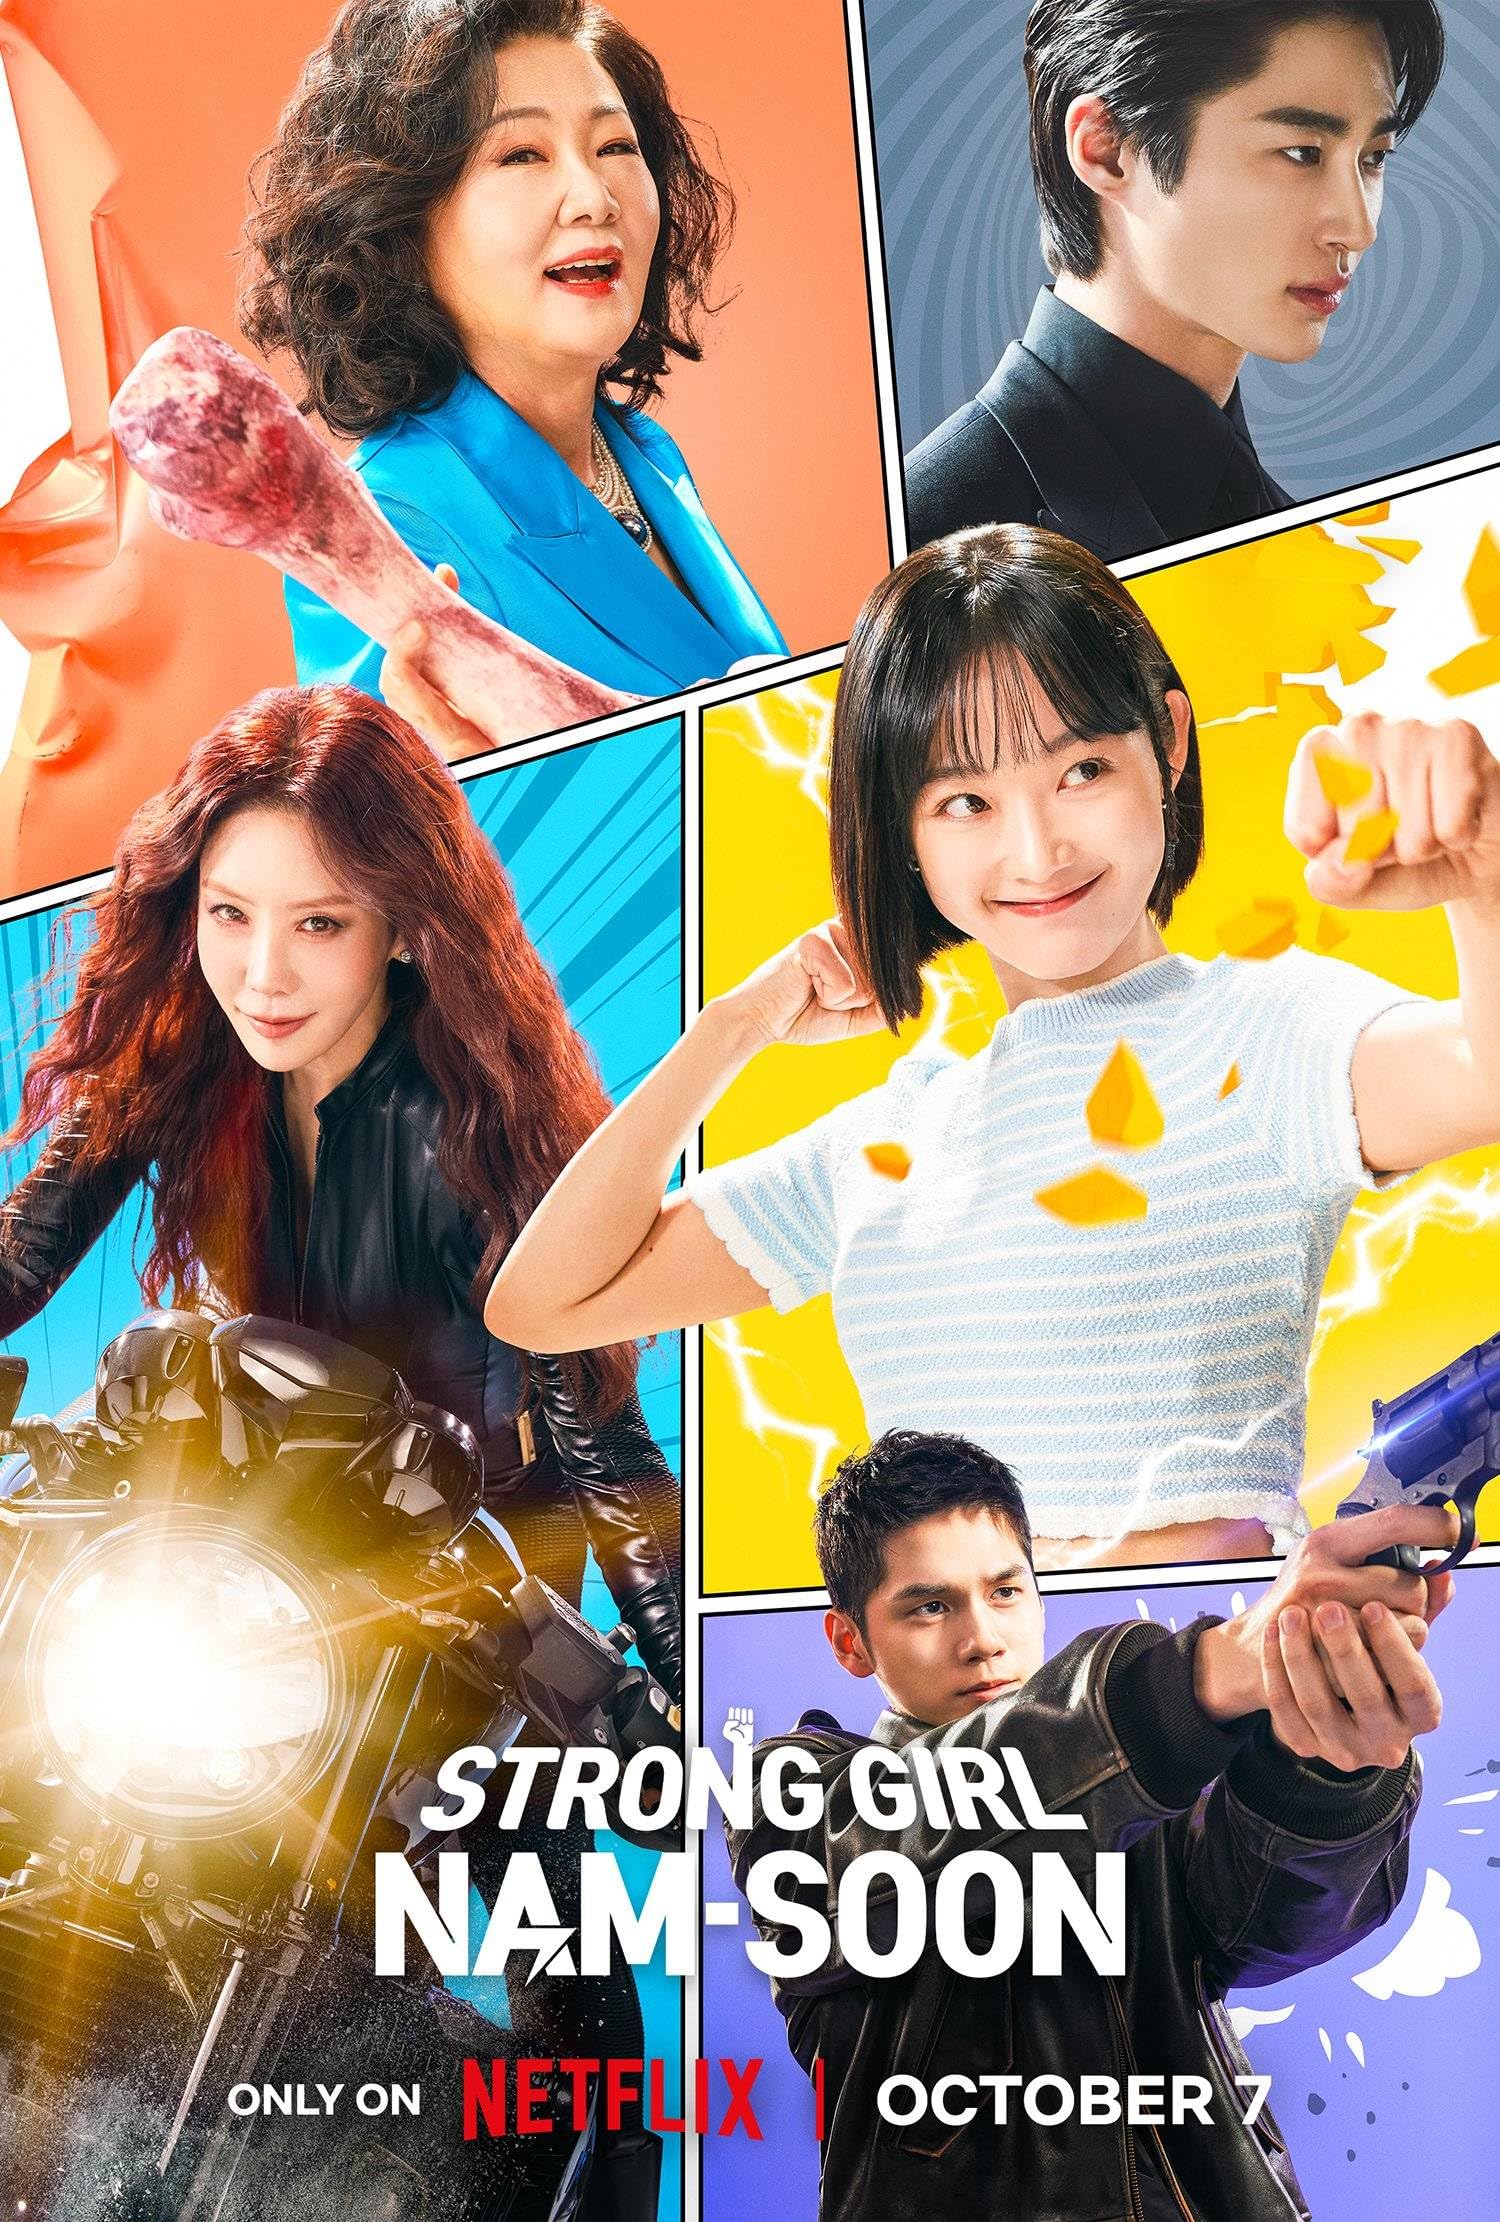 مسلسل الفتاة القوية نام سون Strong Girl Nam-soon الحلقة 12 مترجمة